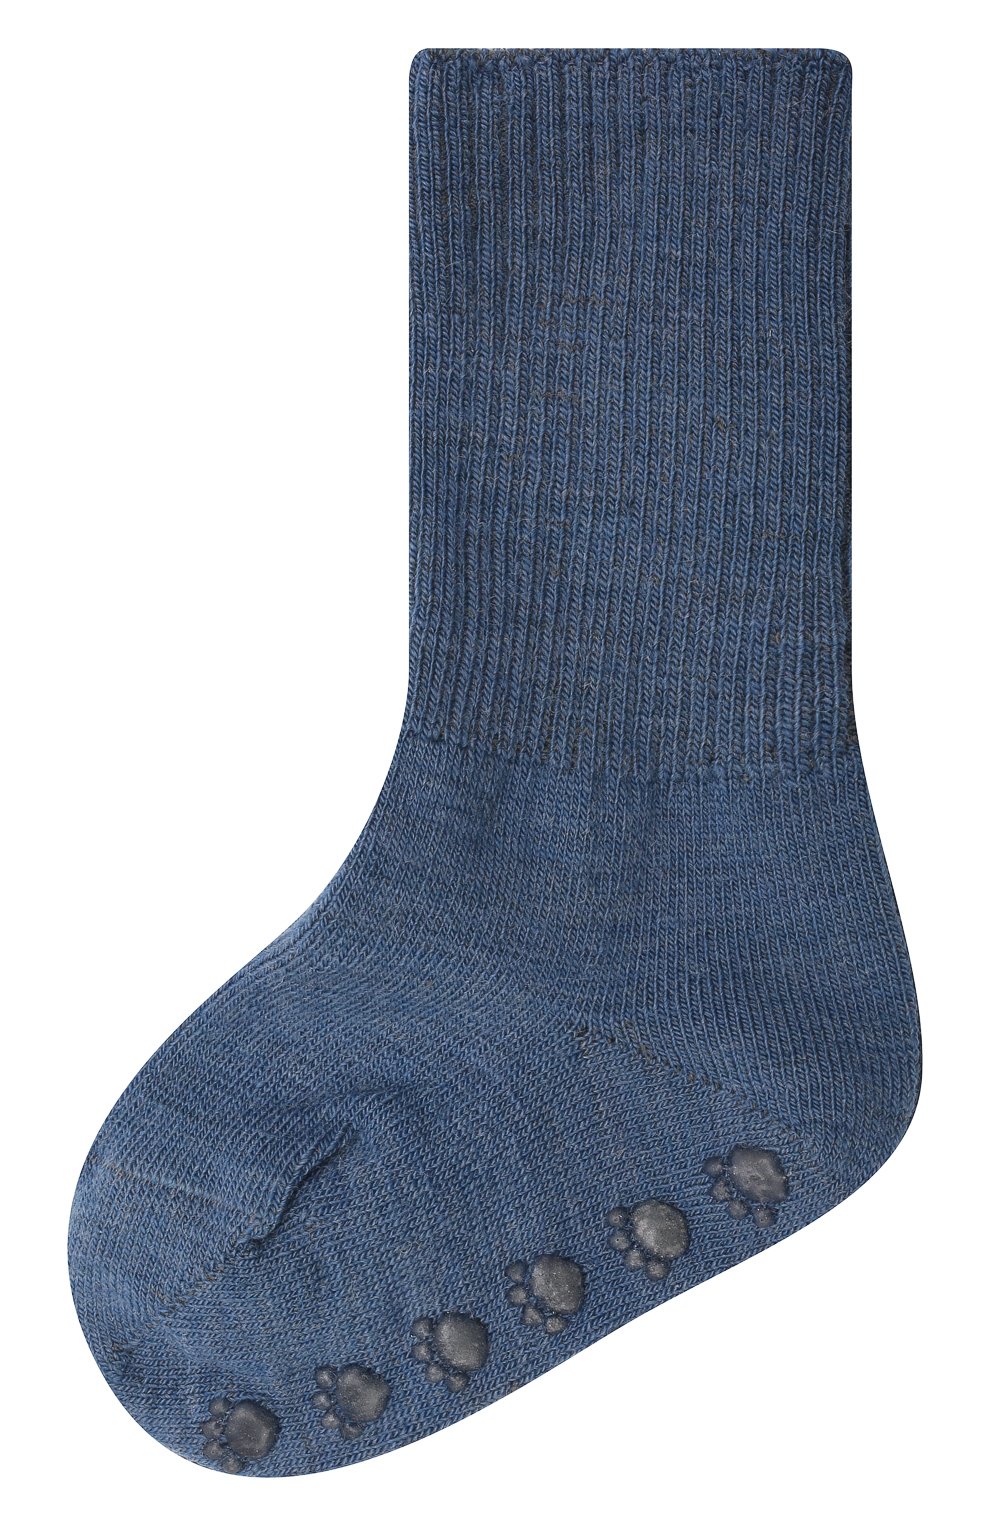 Детские шерстяные носки WOOL&COTTON синего цвета, арт. NAML | Фото 1